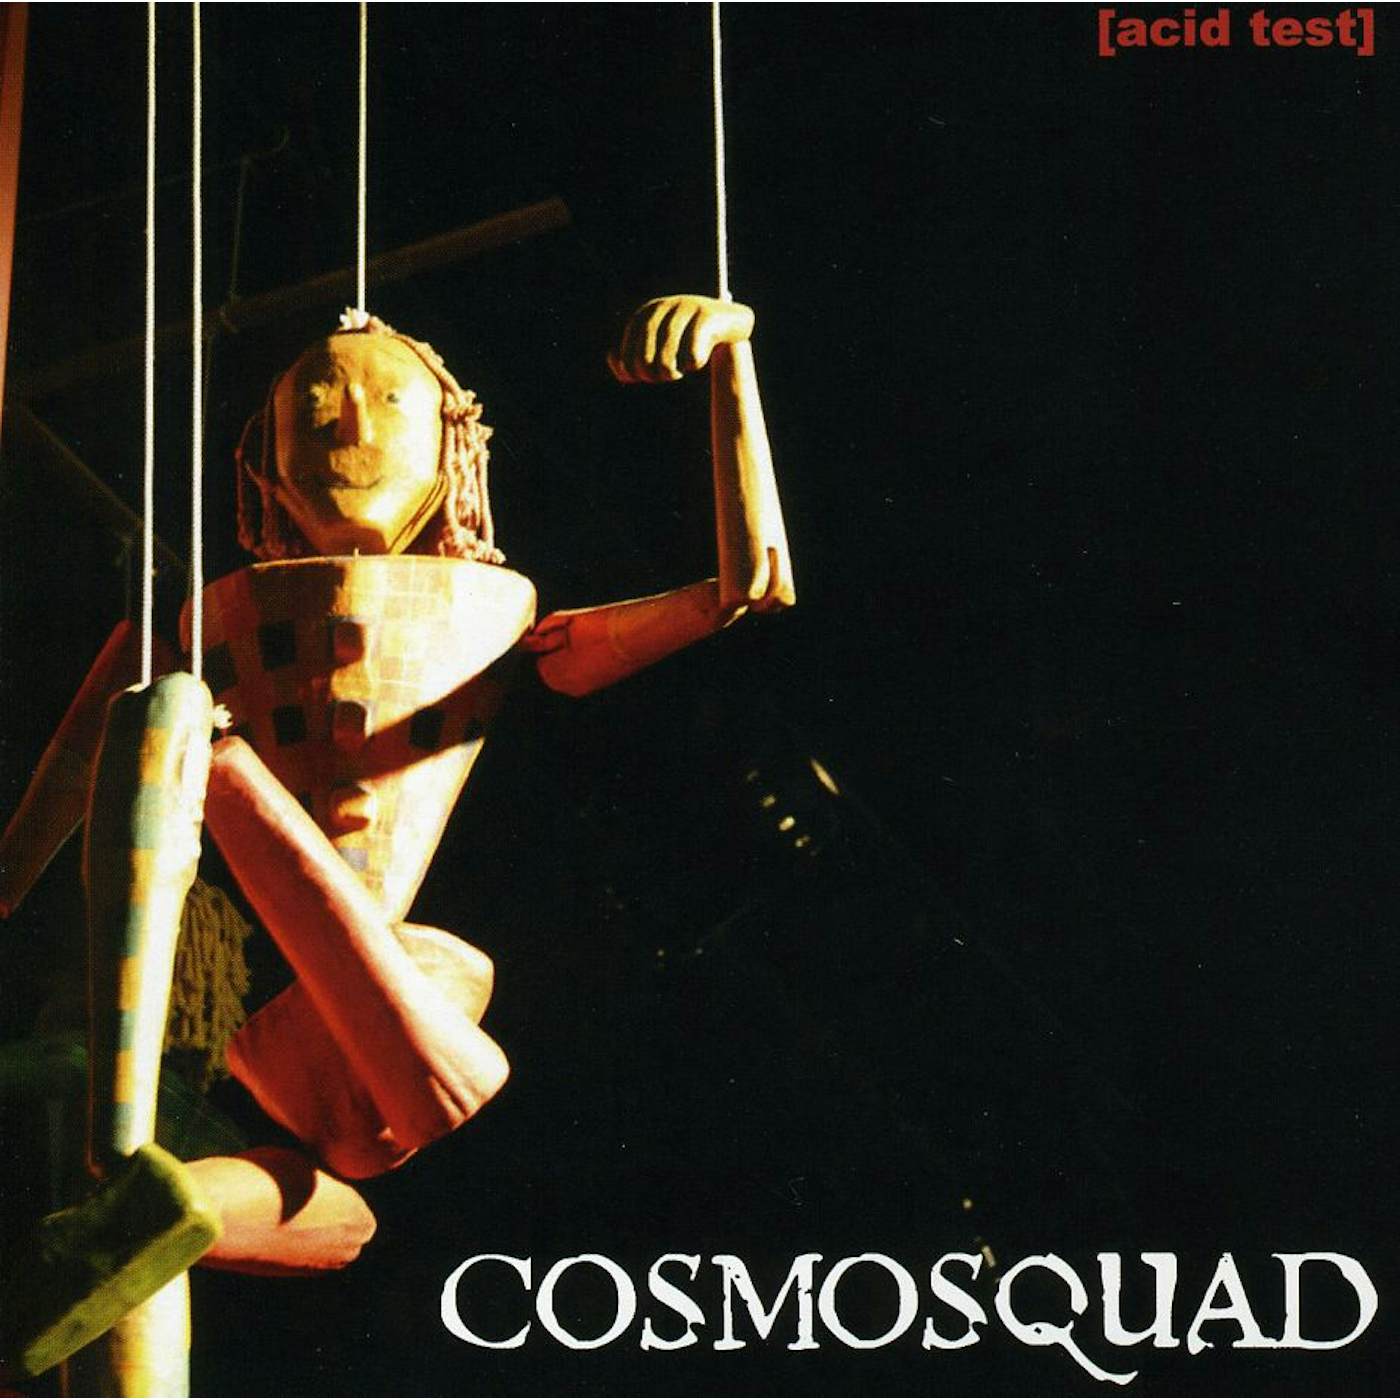 Cosmosquad ACID TEST CD